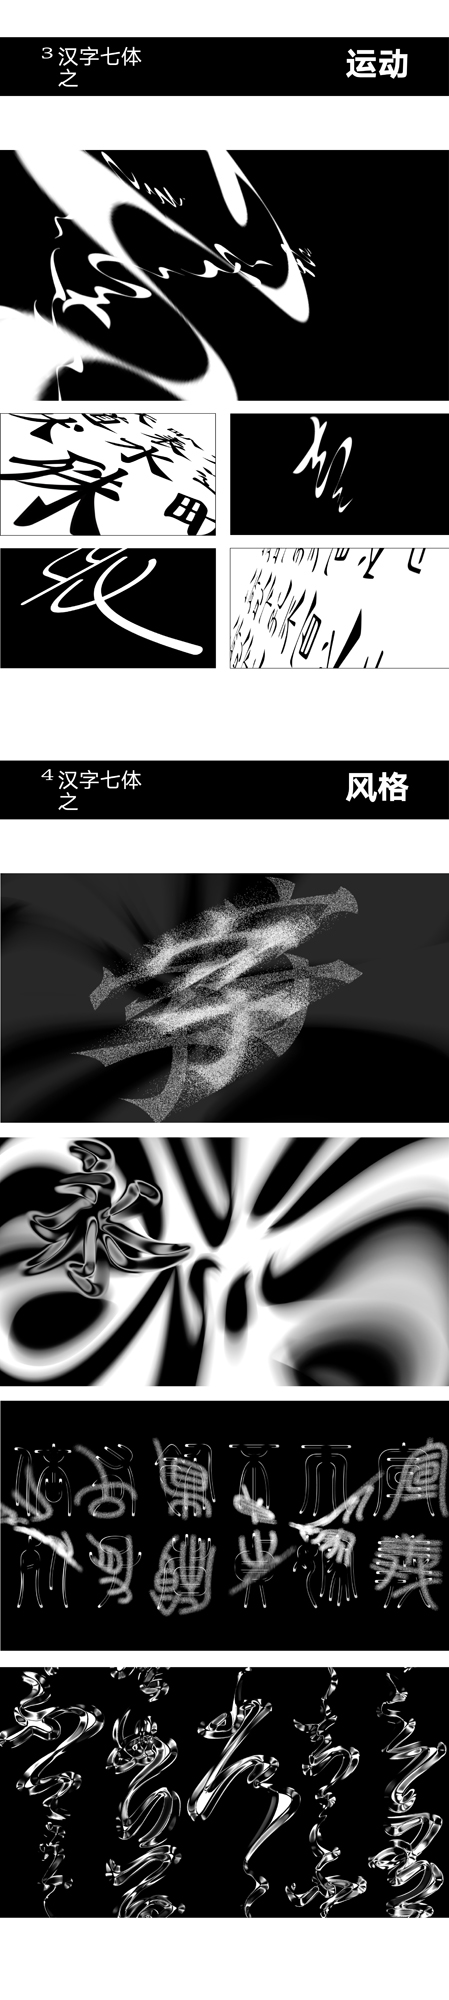 《汉字七体动态化字体设计》3